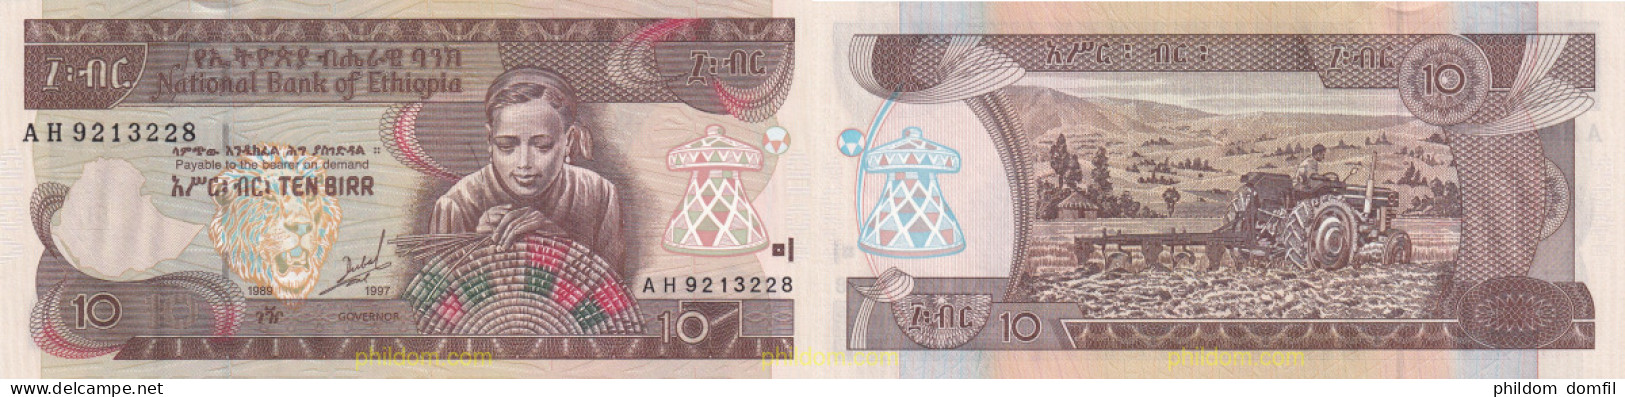 2106 ETIOPIA 1997 ETIOPIA BANK OF ETHIOPIA 10 BIRR 1997 - Ethiopie